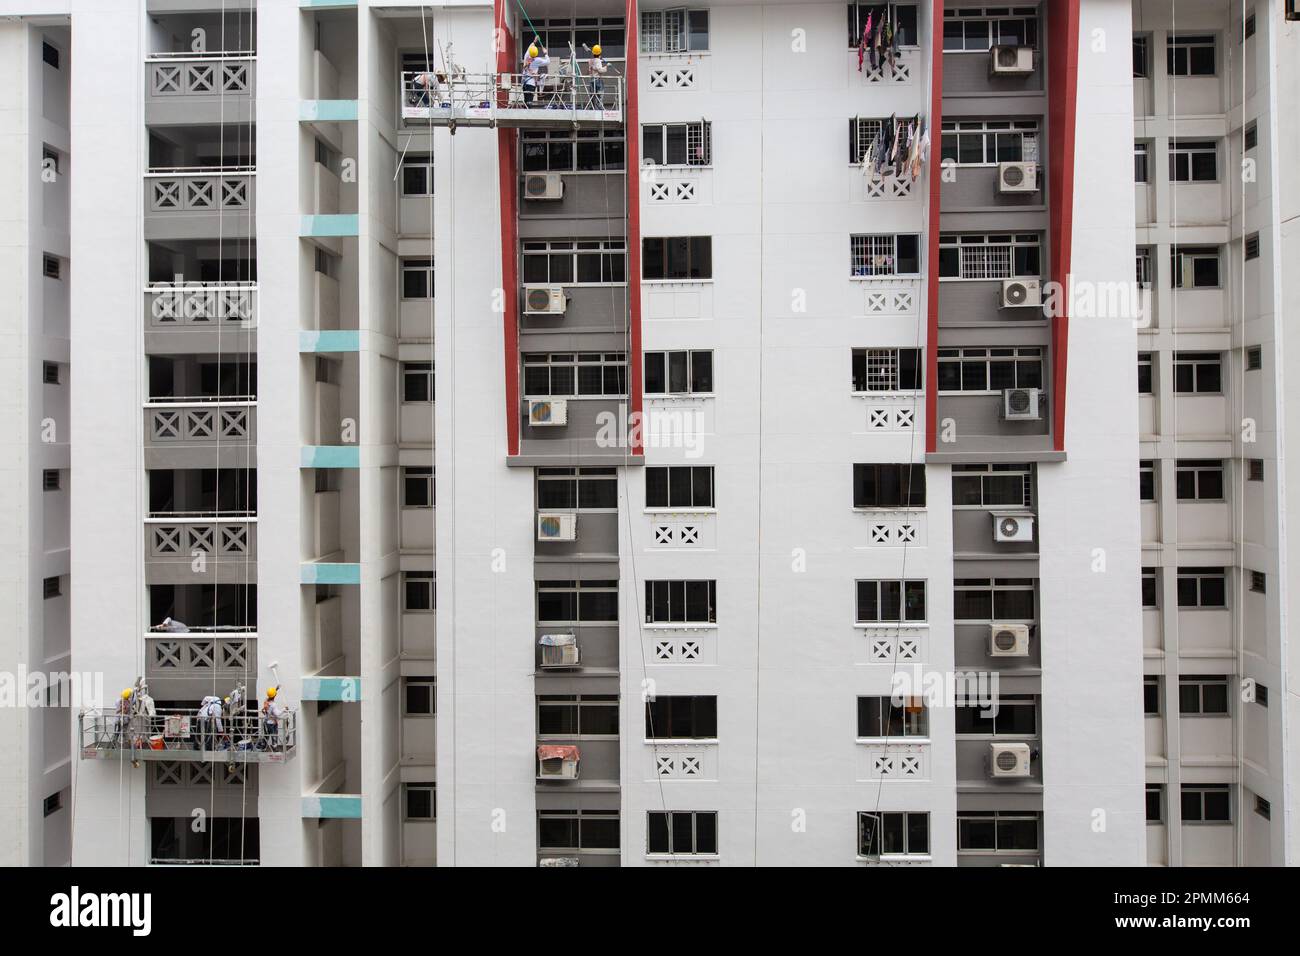 Vue large de 2 ascenseurs d'échafaudage suspendus à l'extérieur d'un bloc, les ouvriers sont occupés à peindre le bâtiment avec une couche de peinture fraîche, Singapour. Banque D'Images